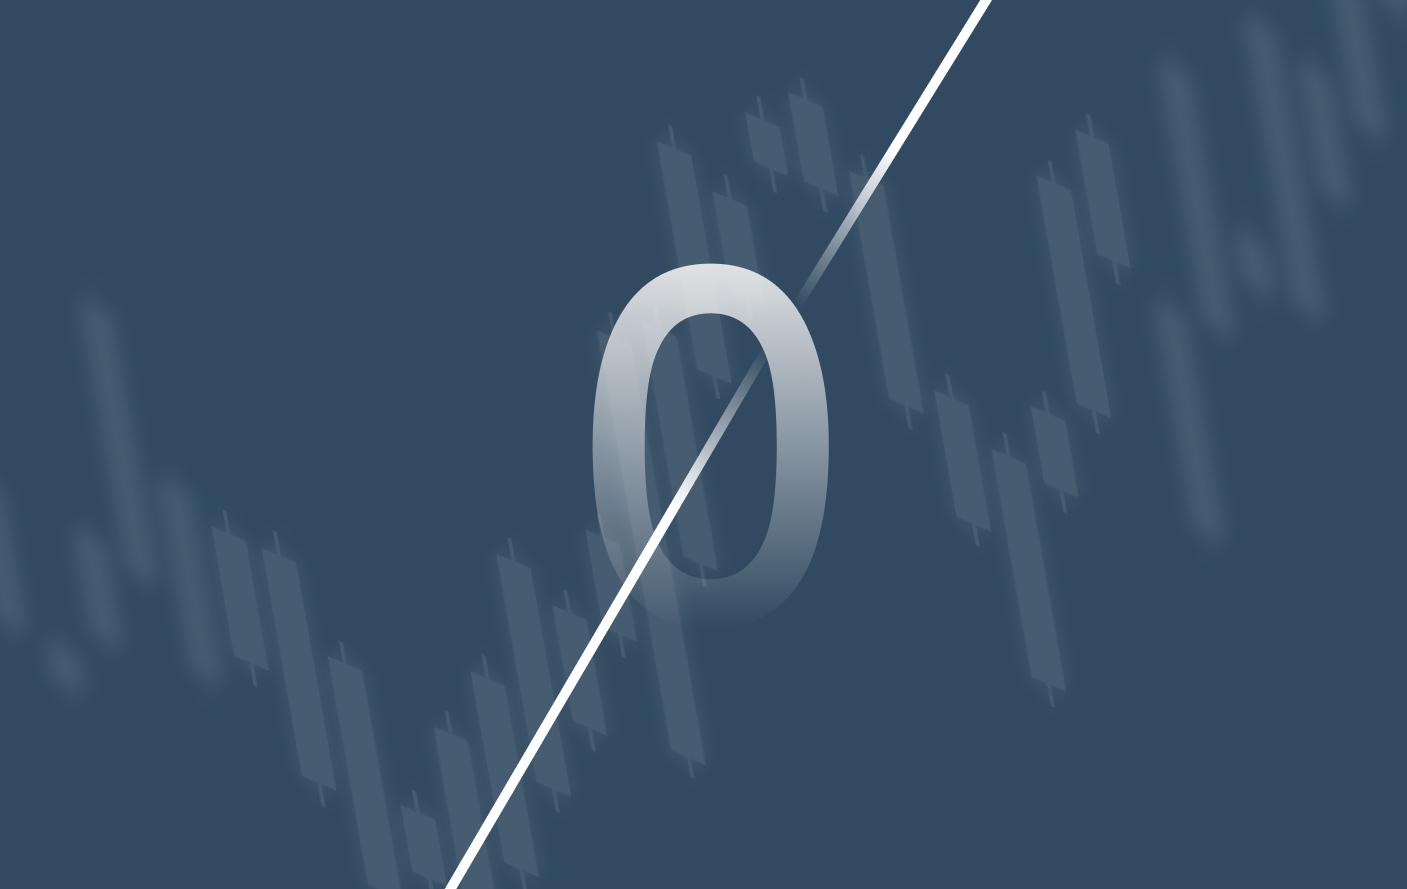 imagem em cinza azulado mostrando ao fundo um gráfico candlestick de investimentos e, na frente, um zero cortado ilustrando a corretagem zero.